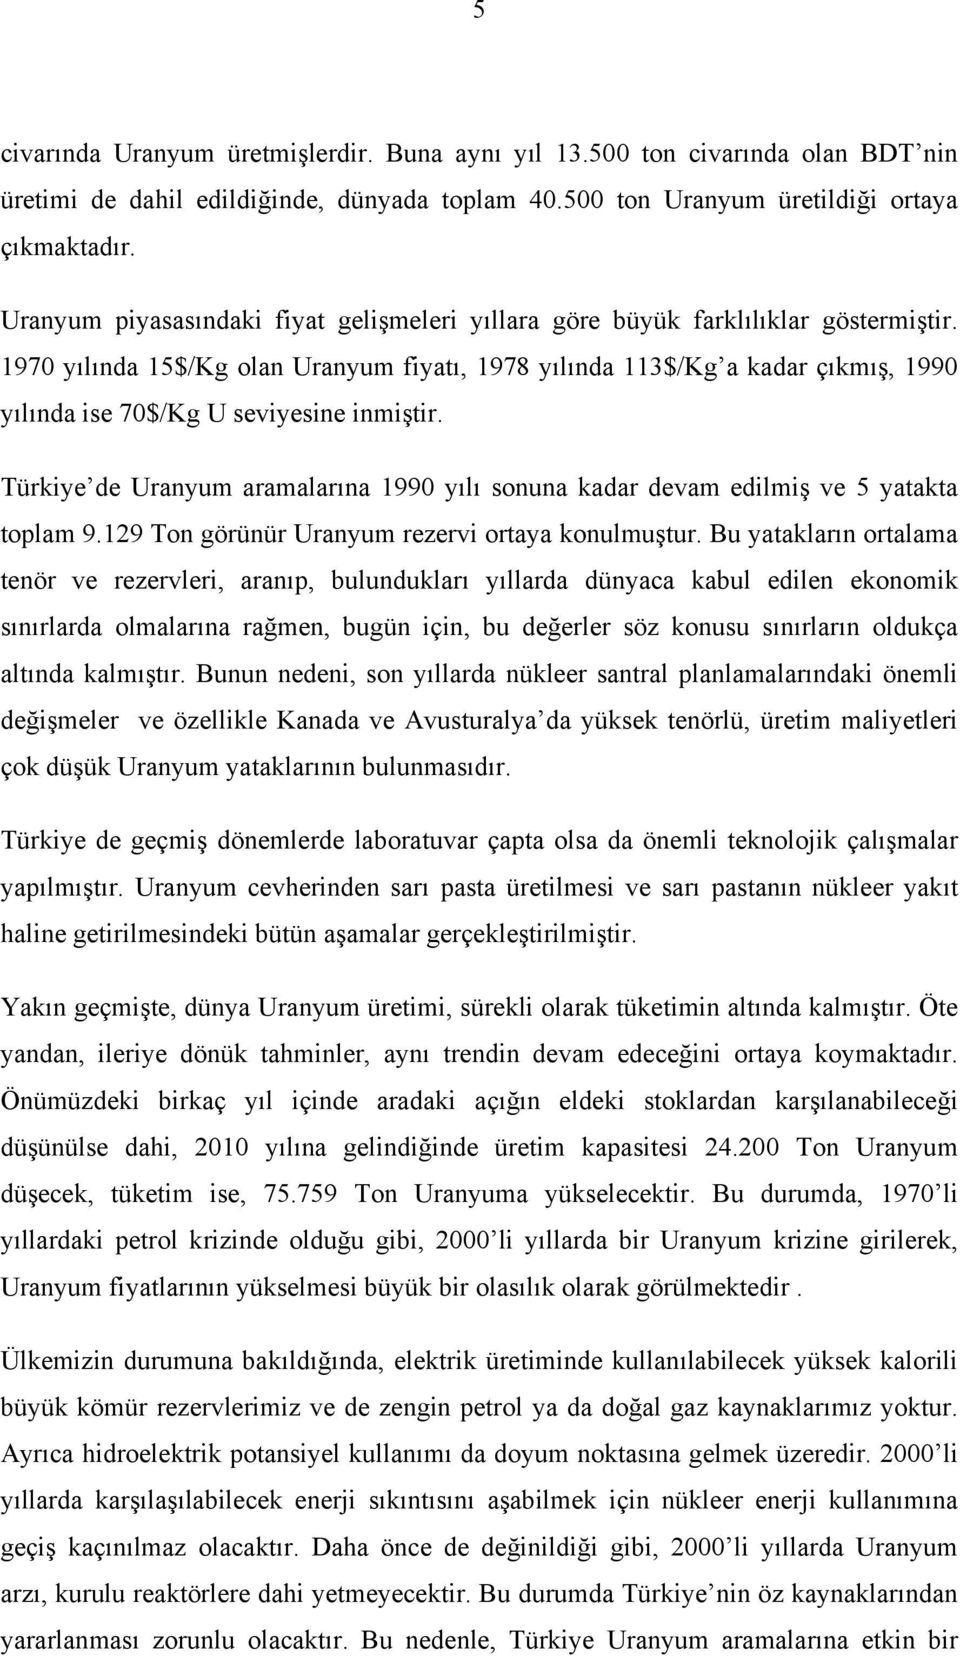 Tükiye de Uanyum aamalaına 1990 yılı sonuna kada devam edilmiş ve 5 yatakta toplam 9.129 Ton göünü Uanyum ezevi otaya konulmuştu.